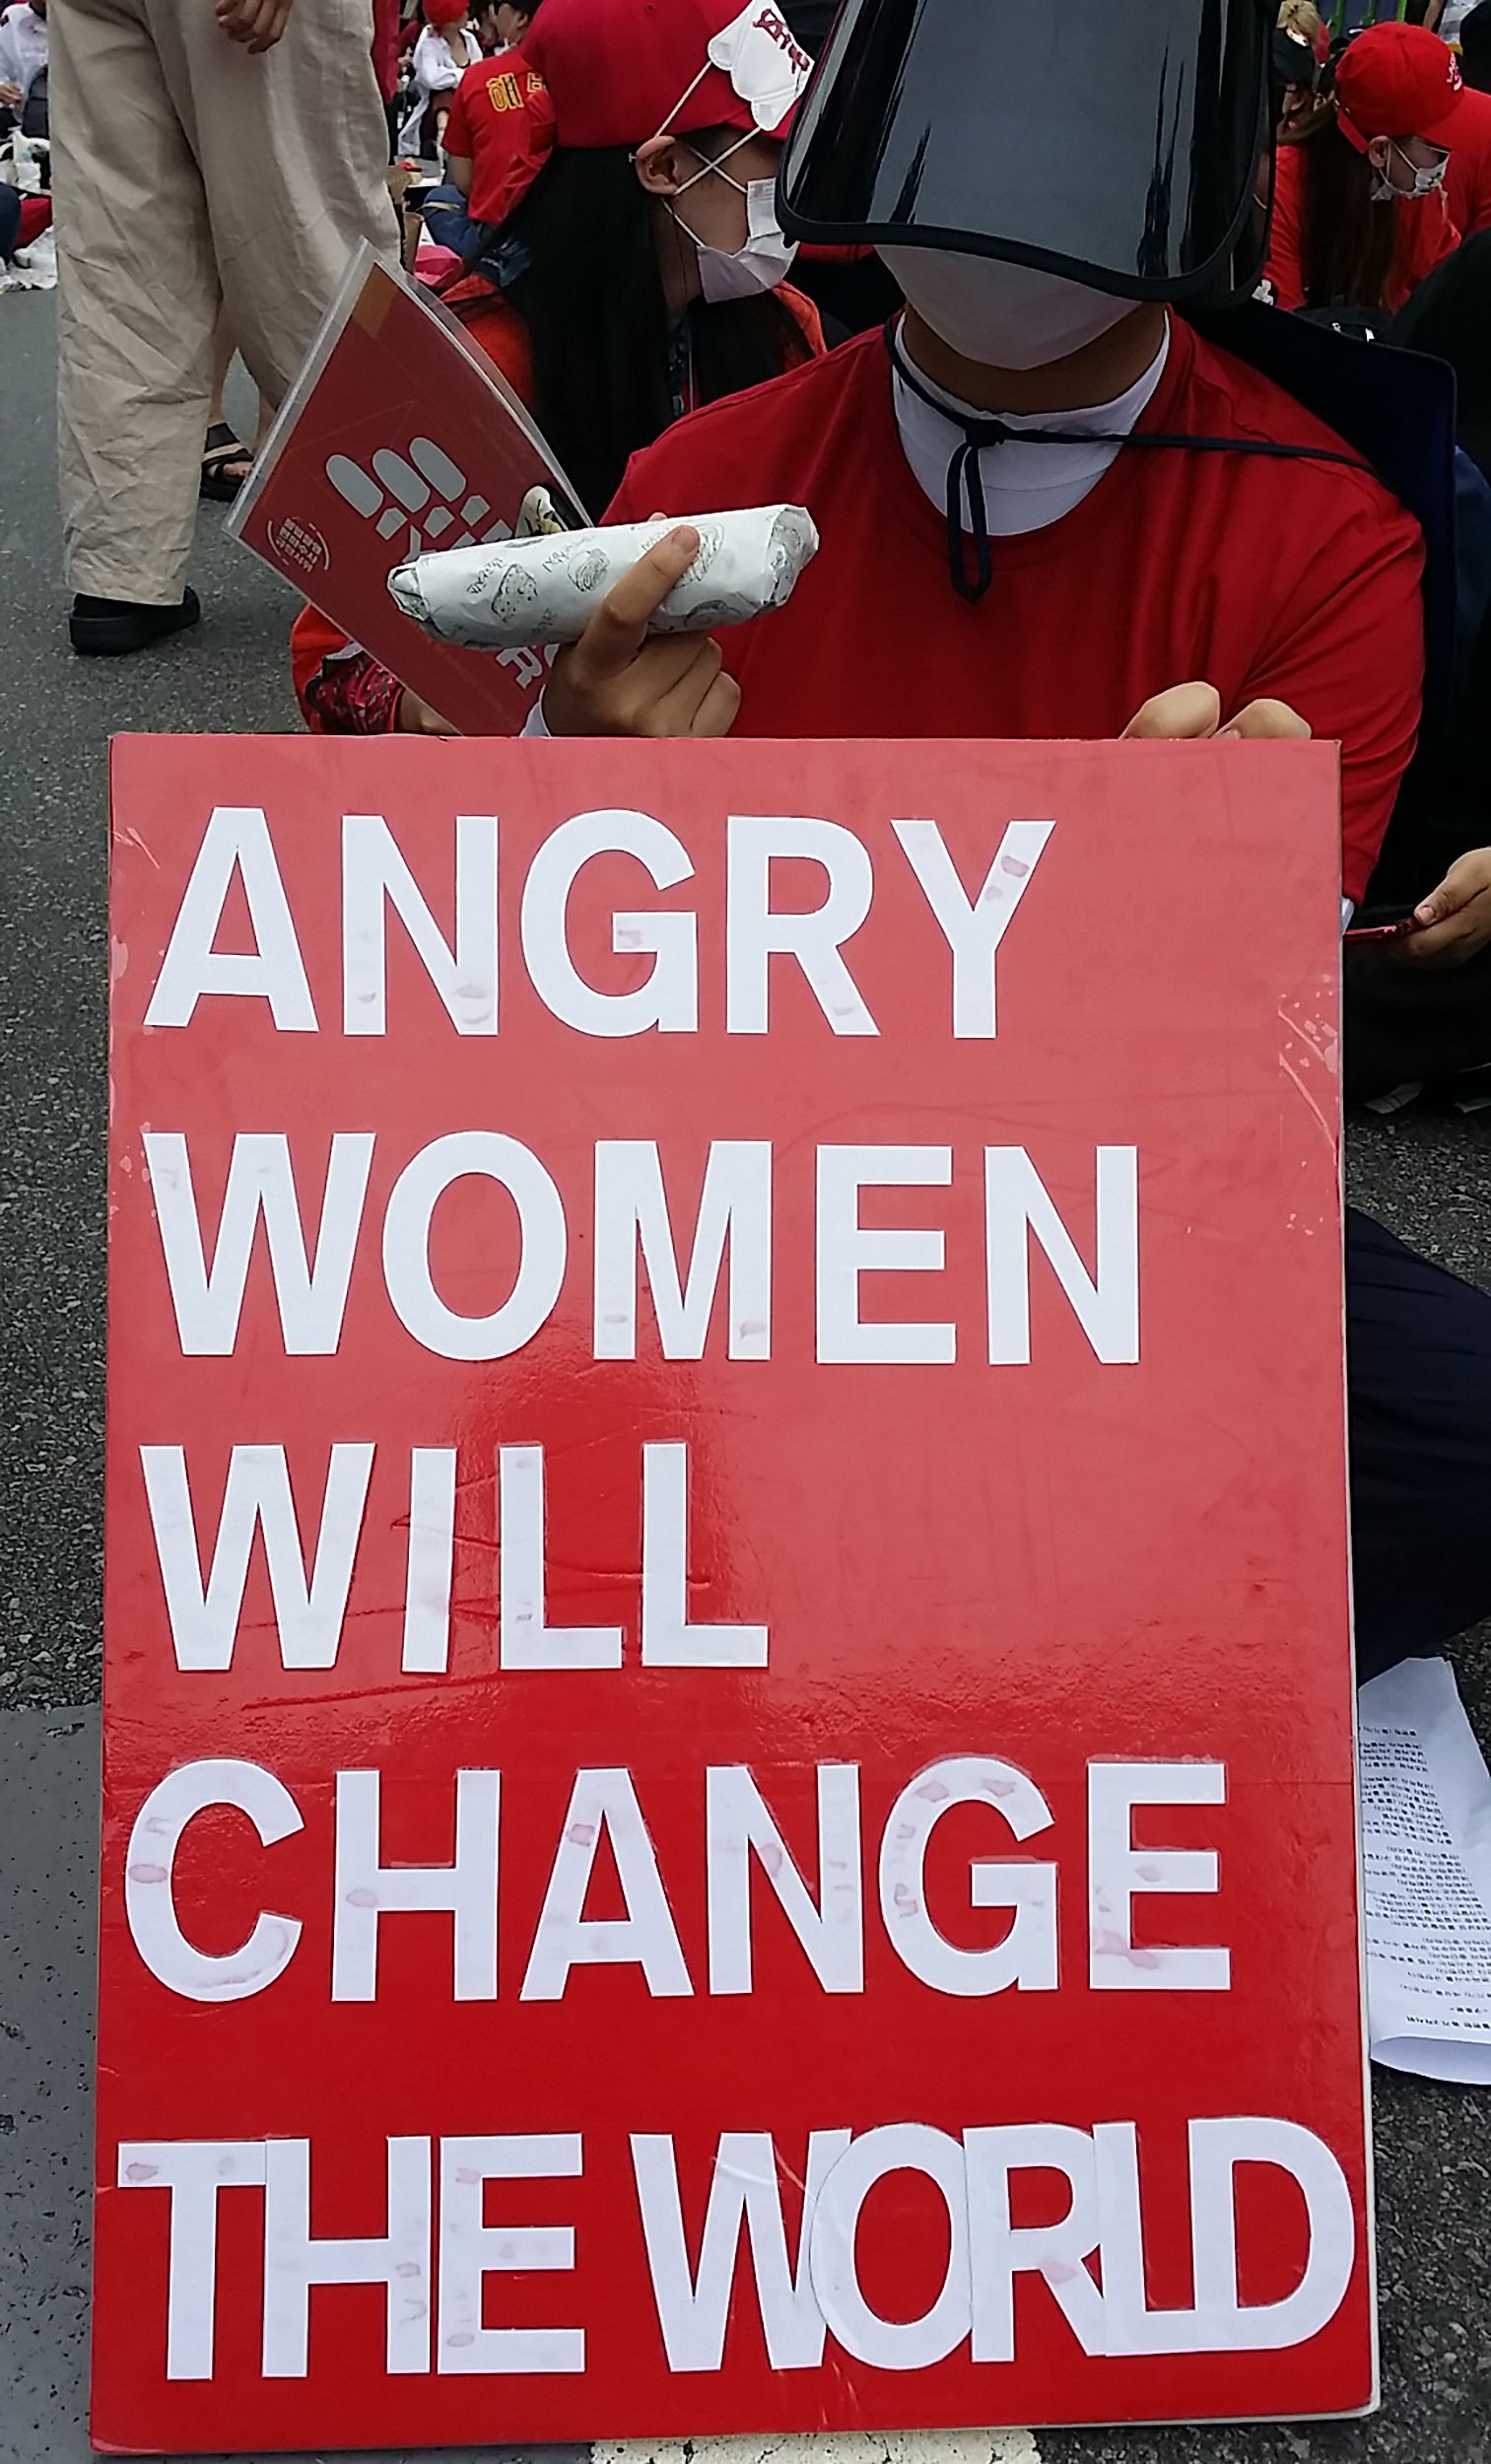 النساء الغاضبة ستغير العالم.. شعار أحد اللافتات